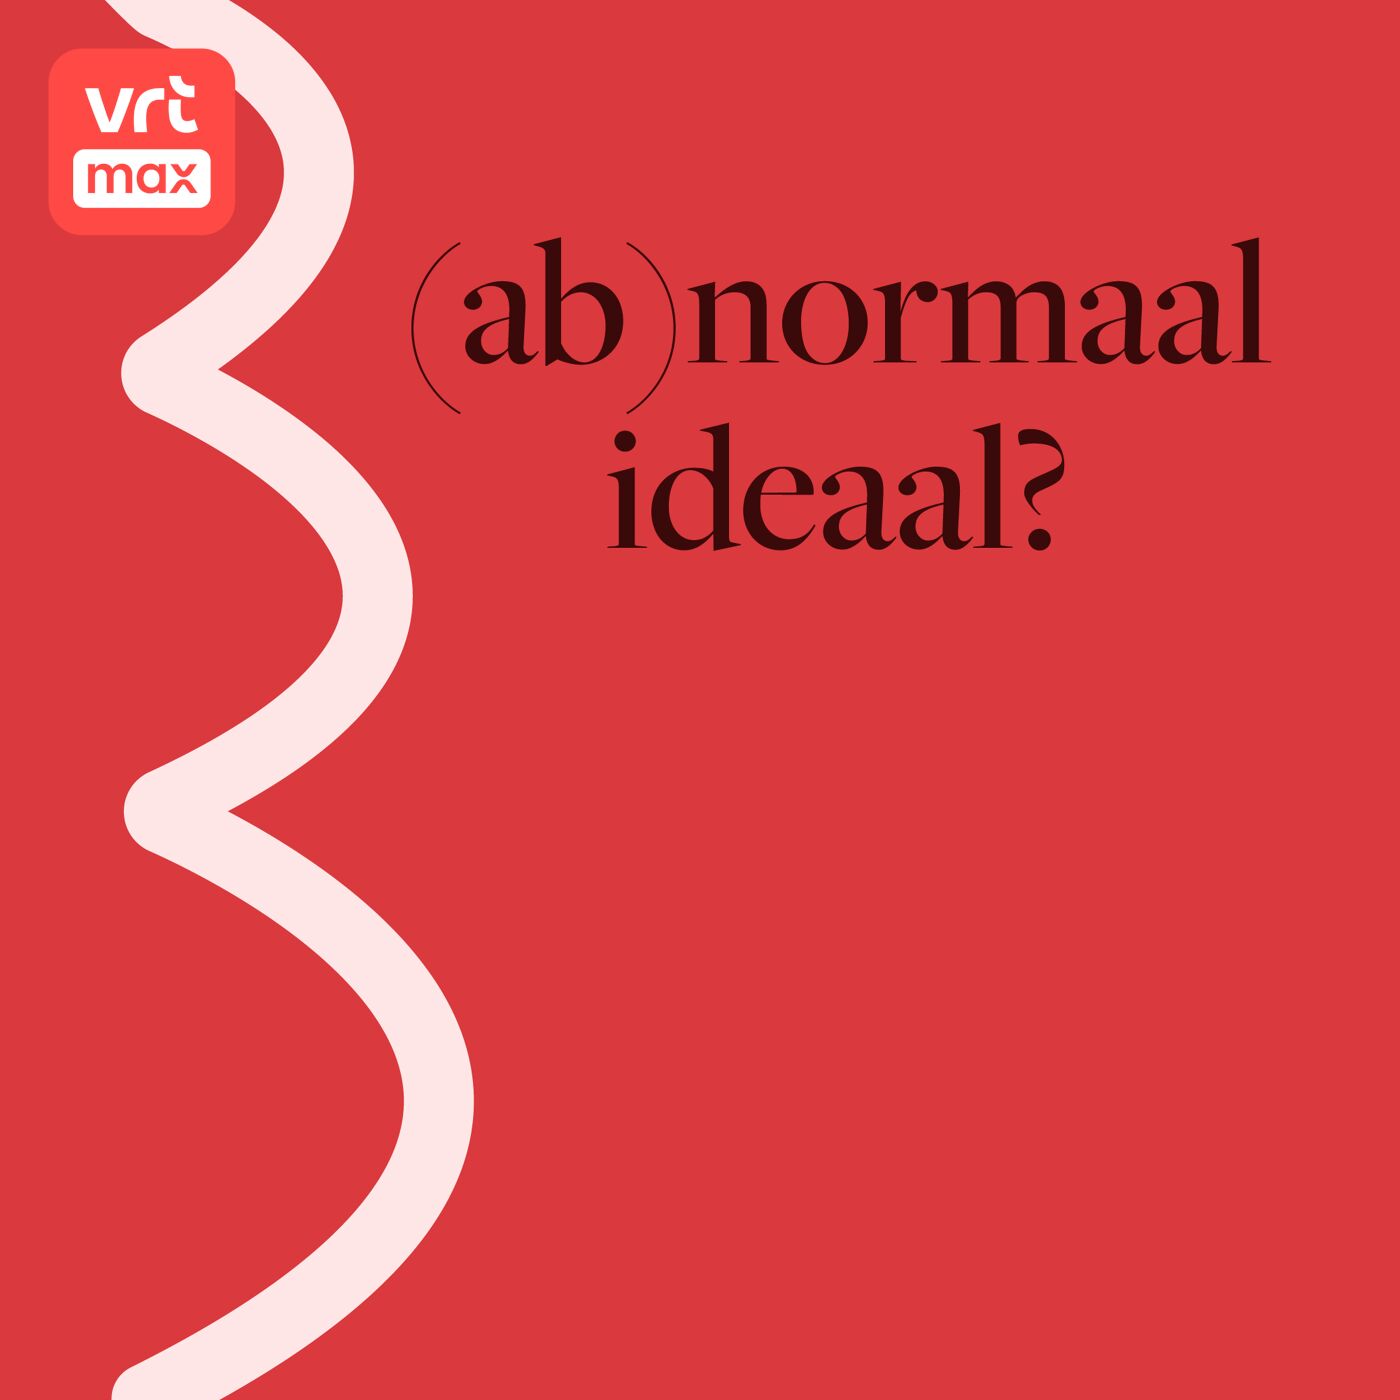 1. (Ab)normaal ideaal?